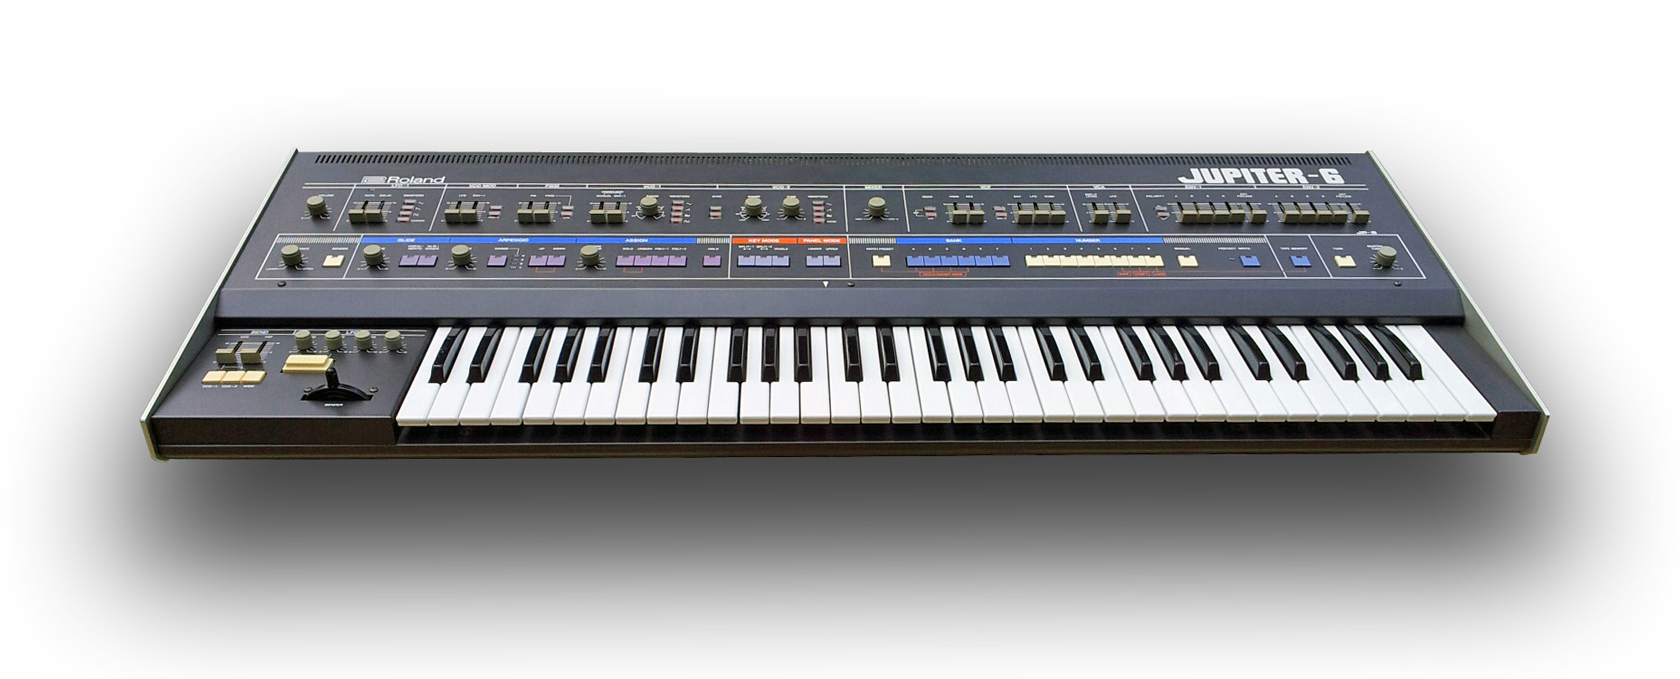 Roland Jupiter-6 synthesizer